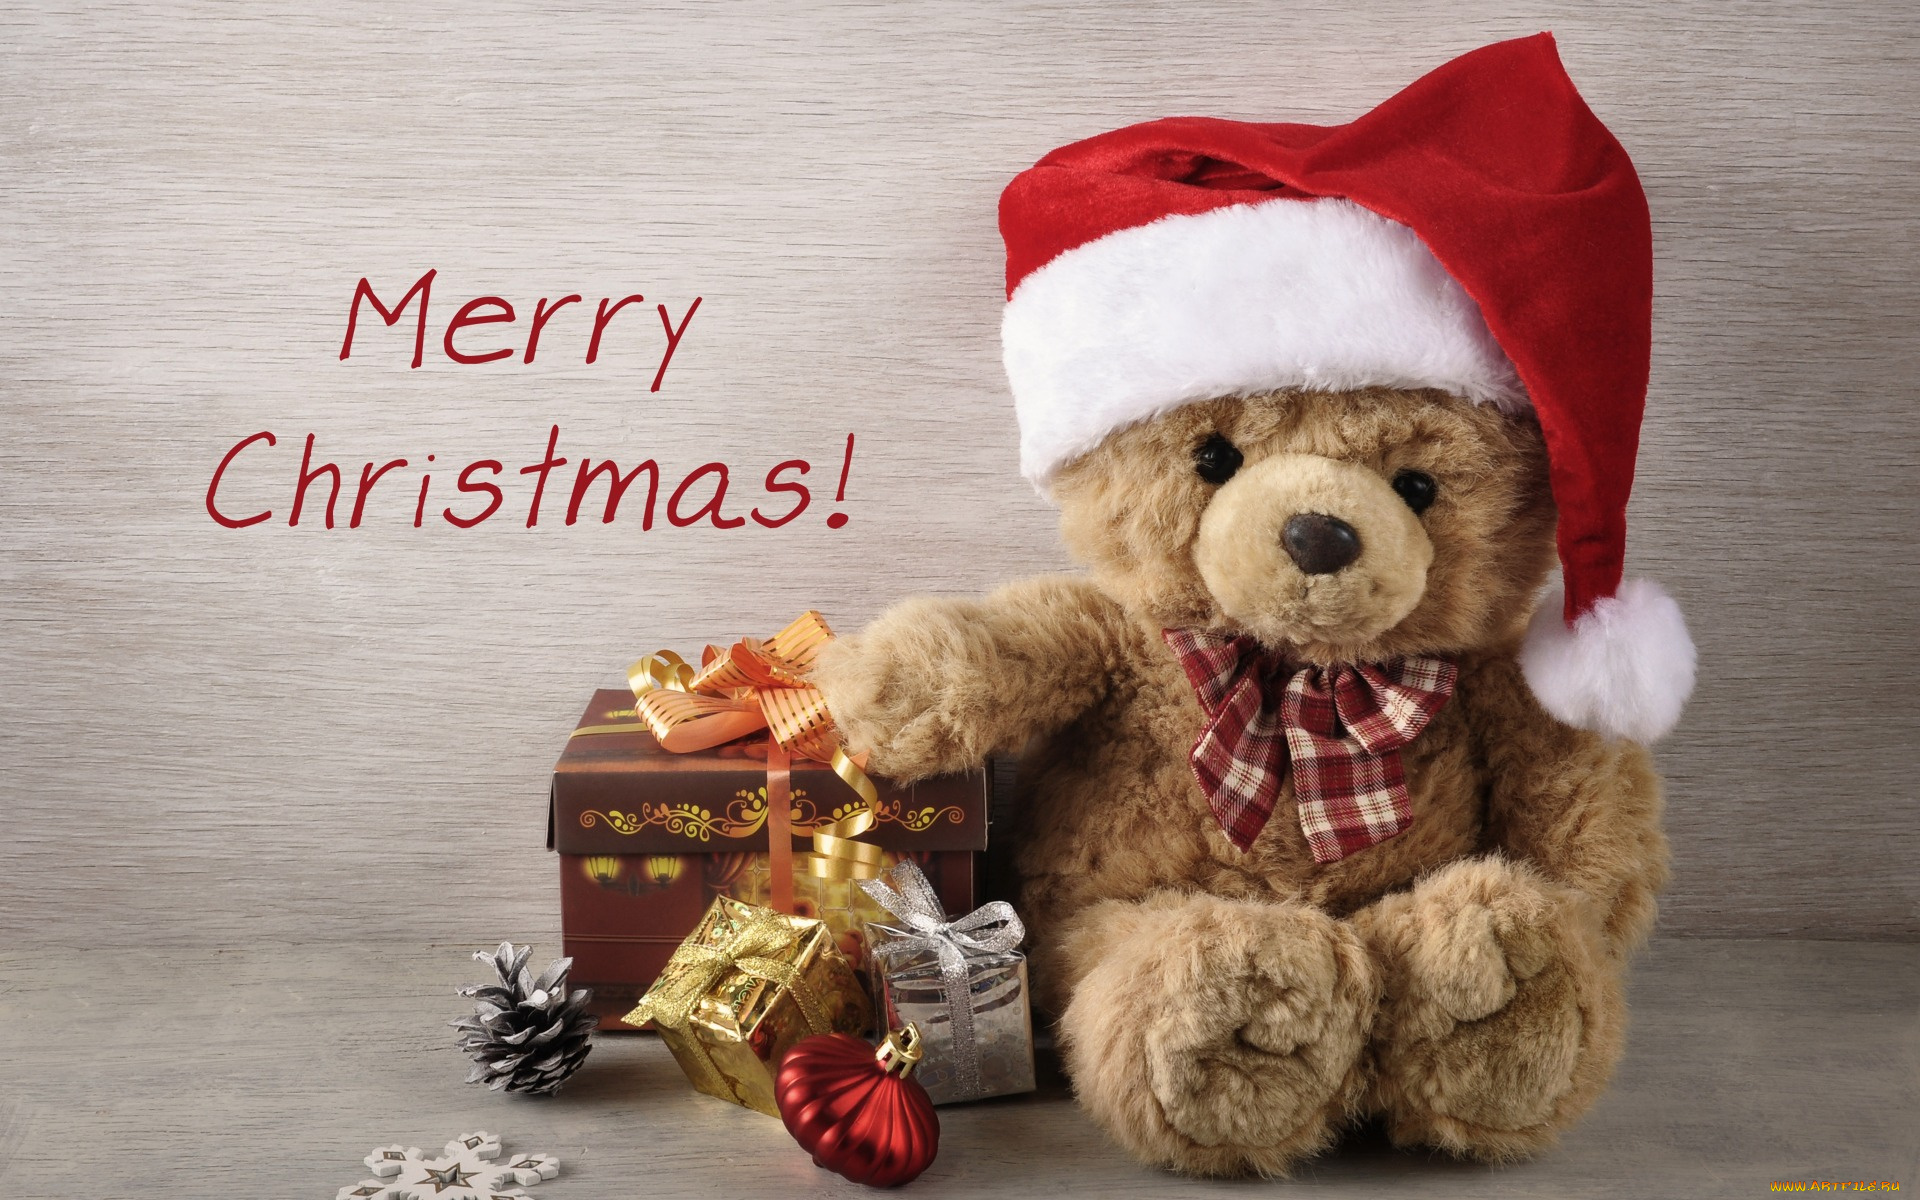 праздничные, мягкие, игрушки, holiday, celebration, gift, игрушки, teddy, bear, рождество, christmas, елка, vintage, xmas, новый, год, подарки, decoration, merry, украшения